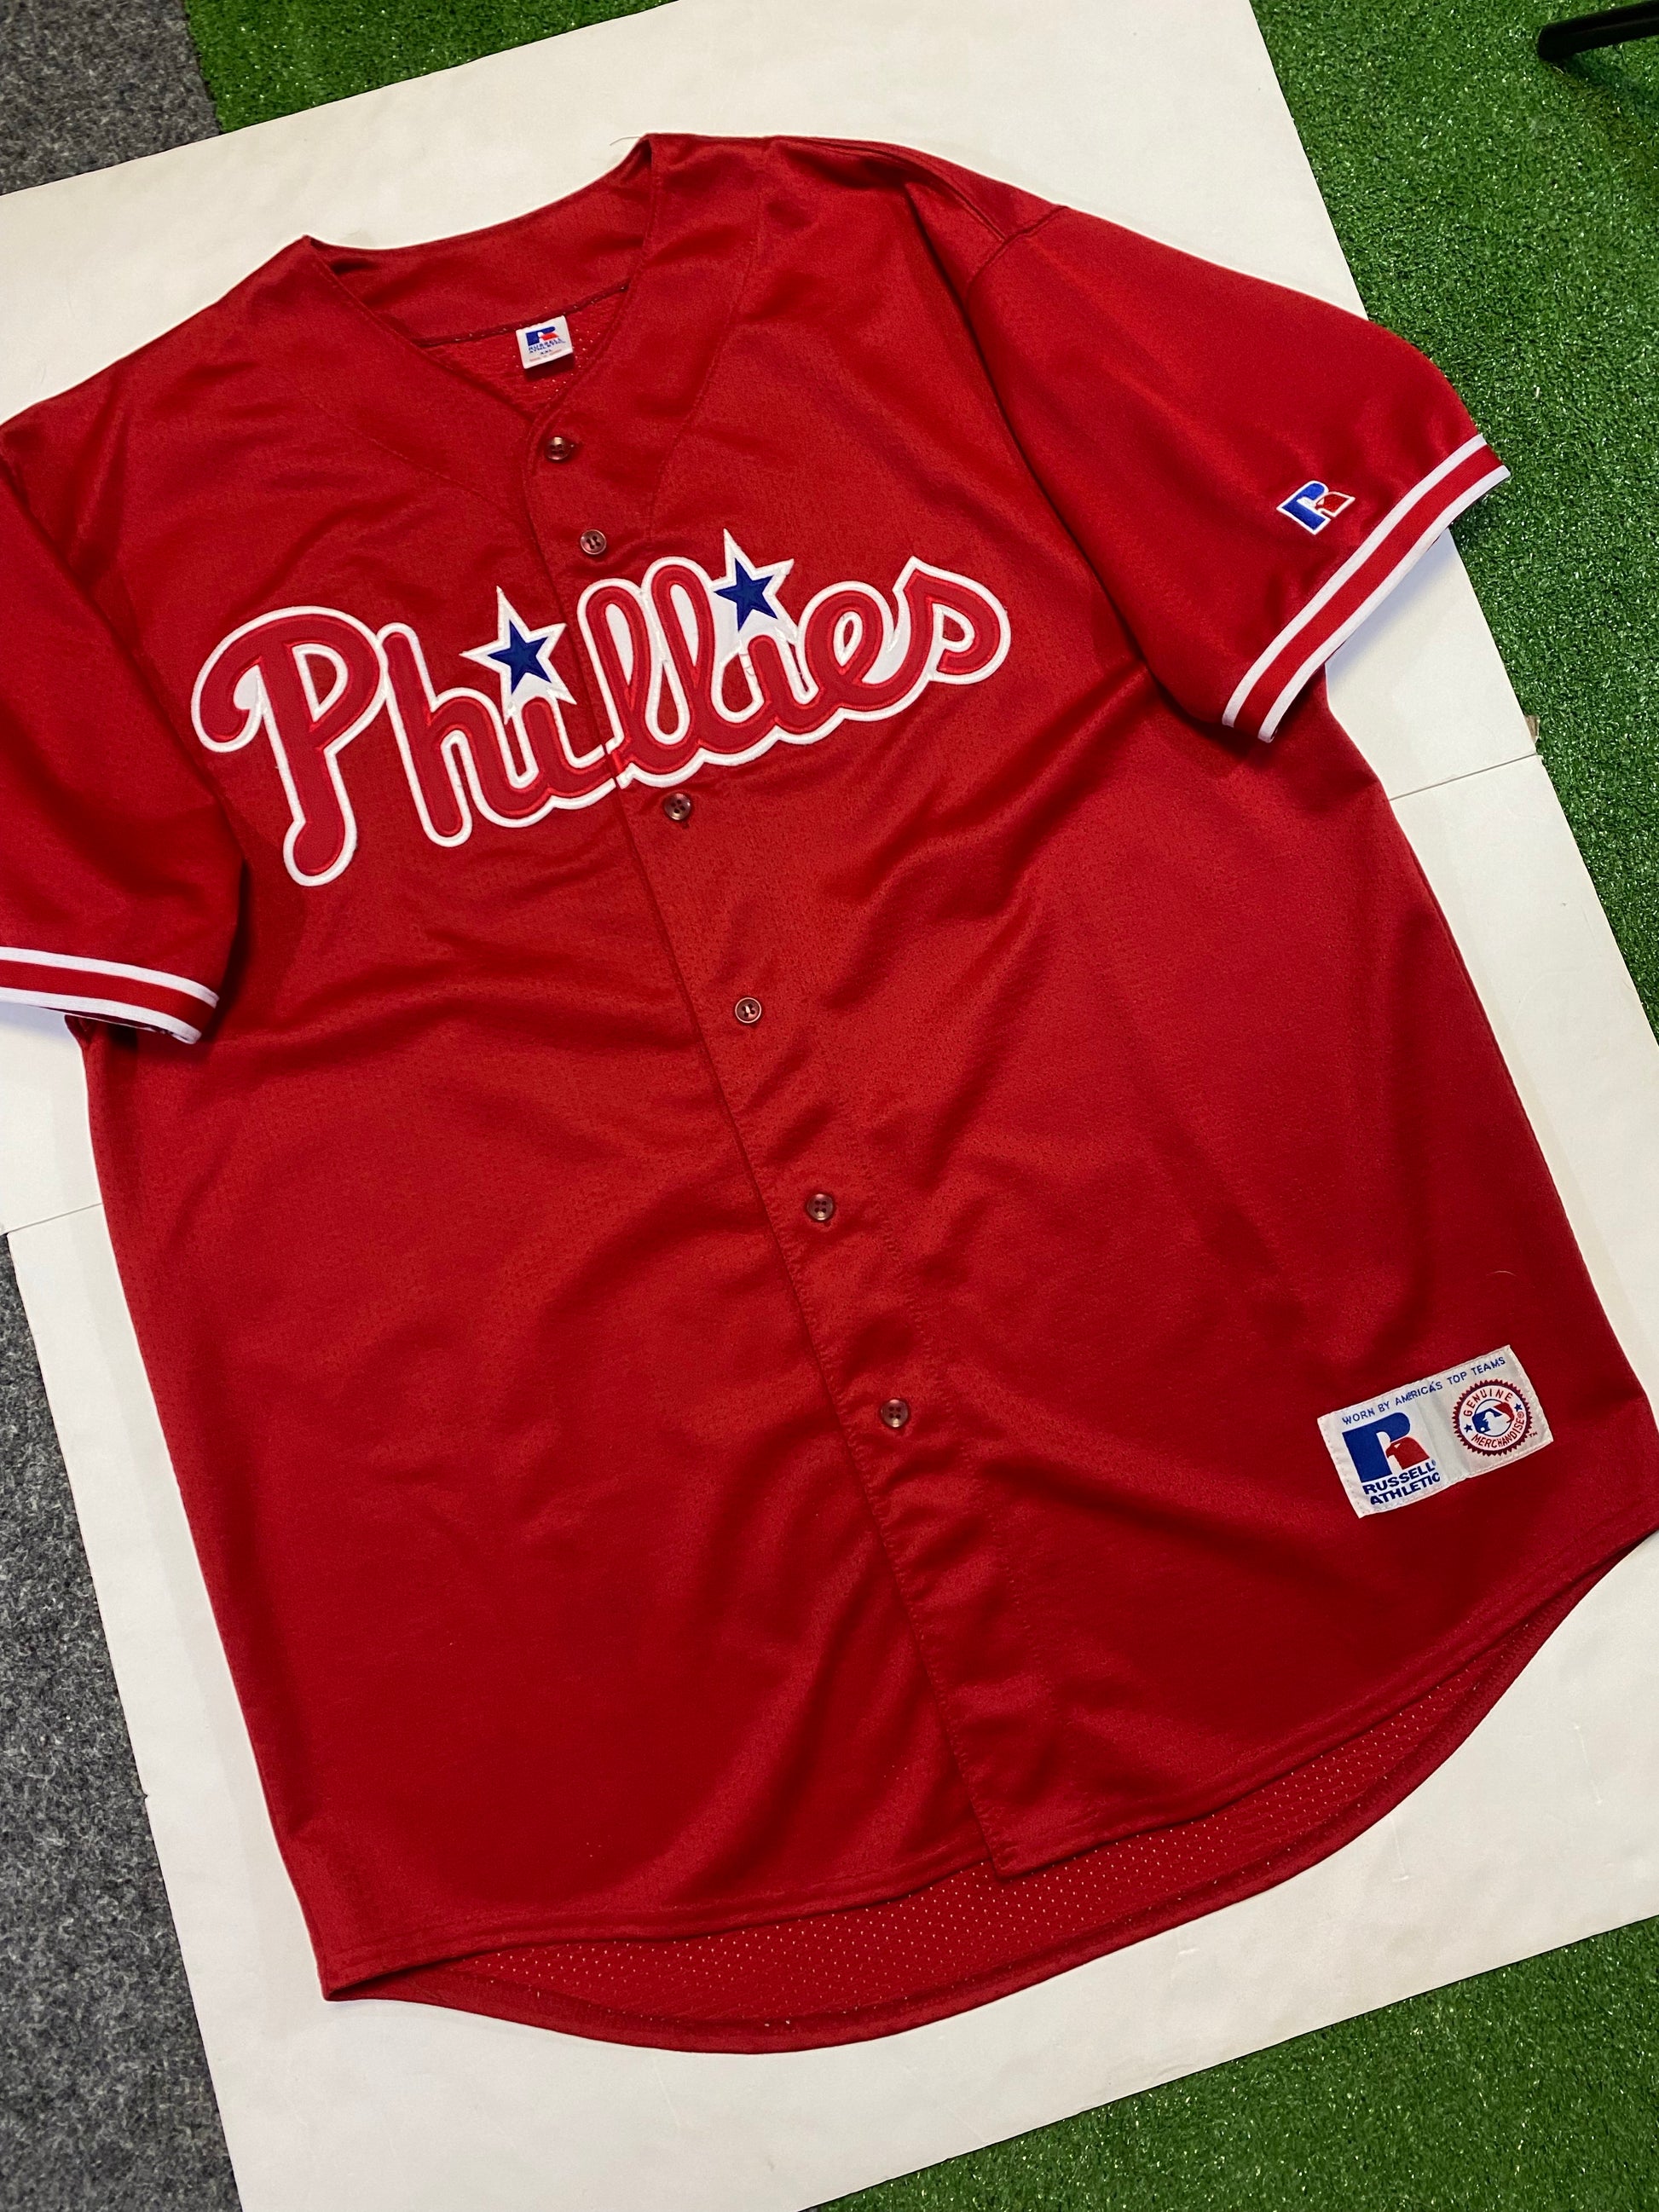 Vintage Russell Athletic MLB Philadelphia Phillies Baseball Jersey